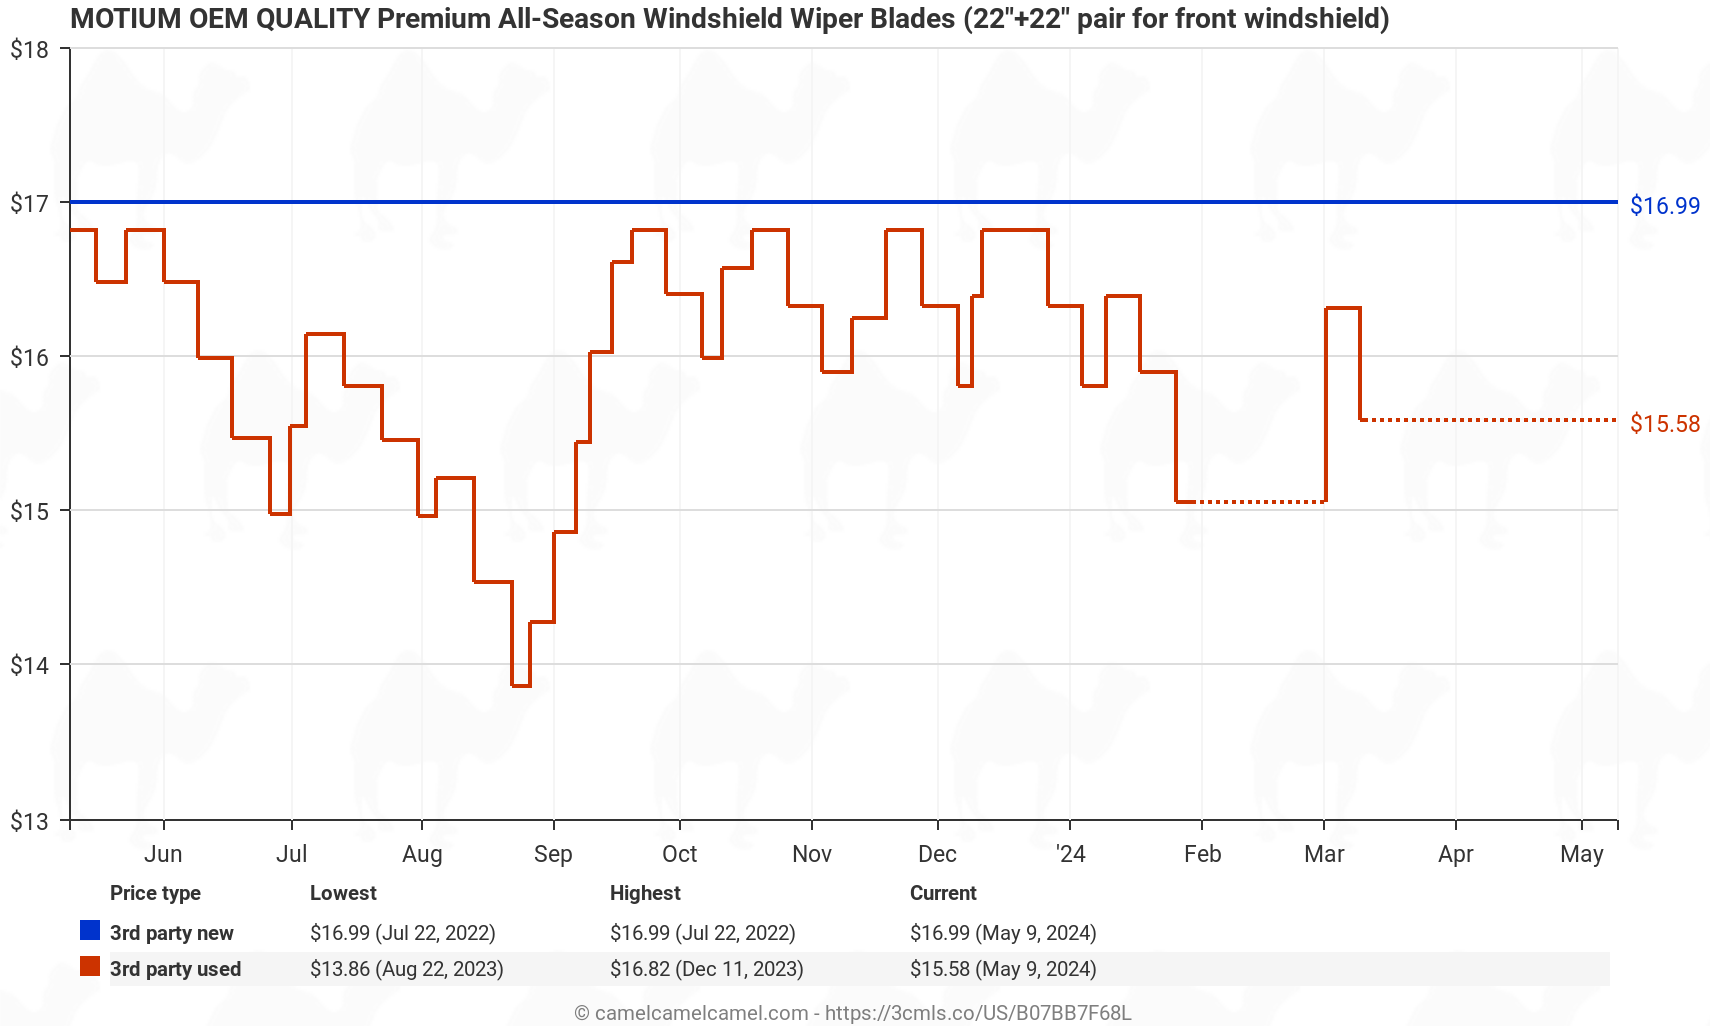 MOTIUM OEM QUALITY 22" + 22" Premium All-Season Windshield Wiper Blades (set of 2) - Price History: B07BB7F68L